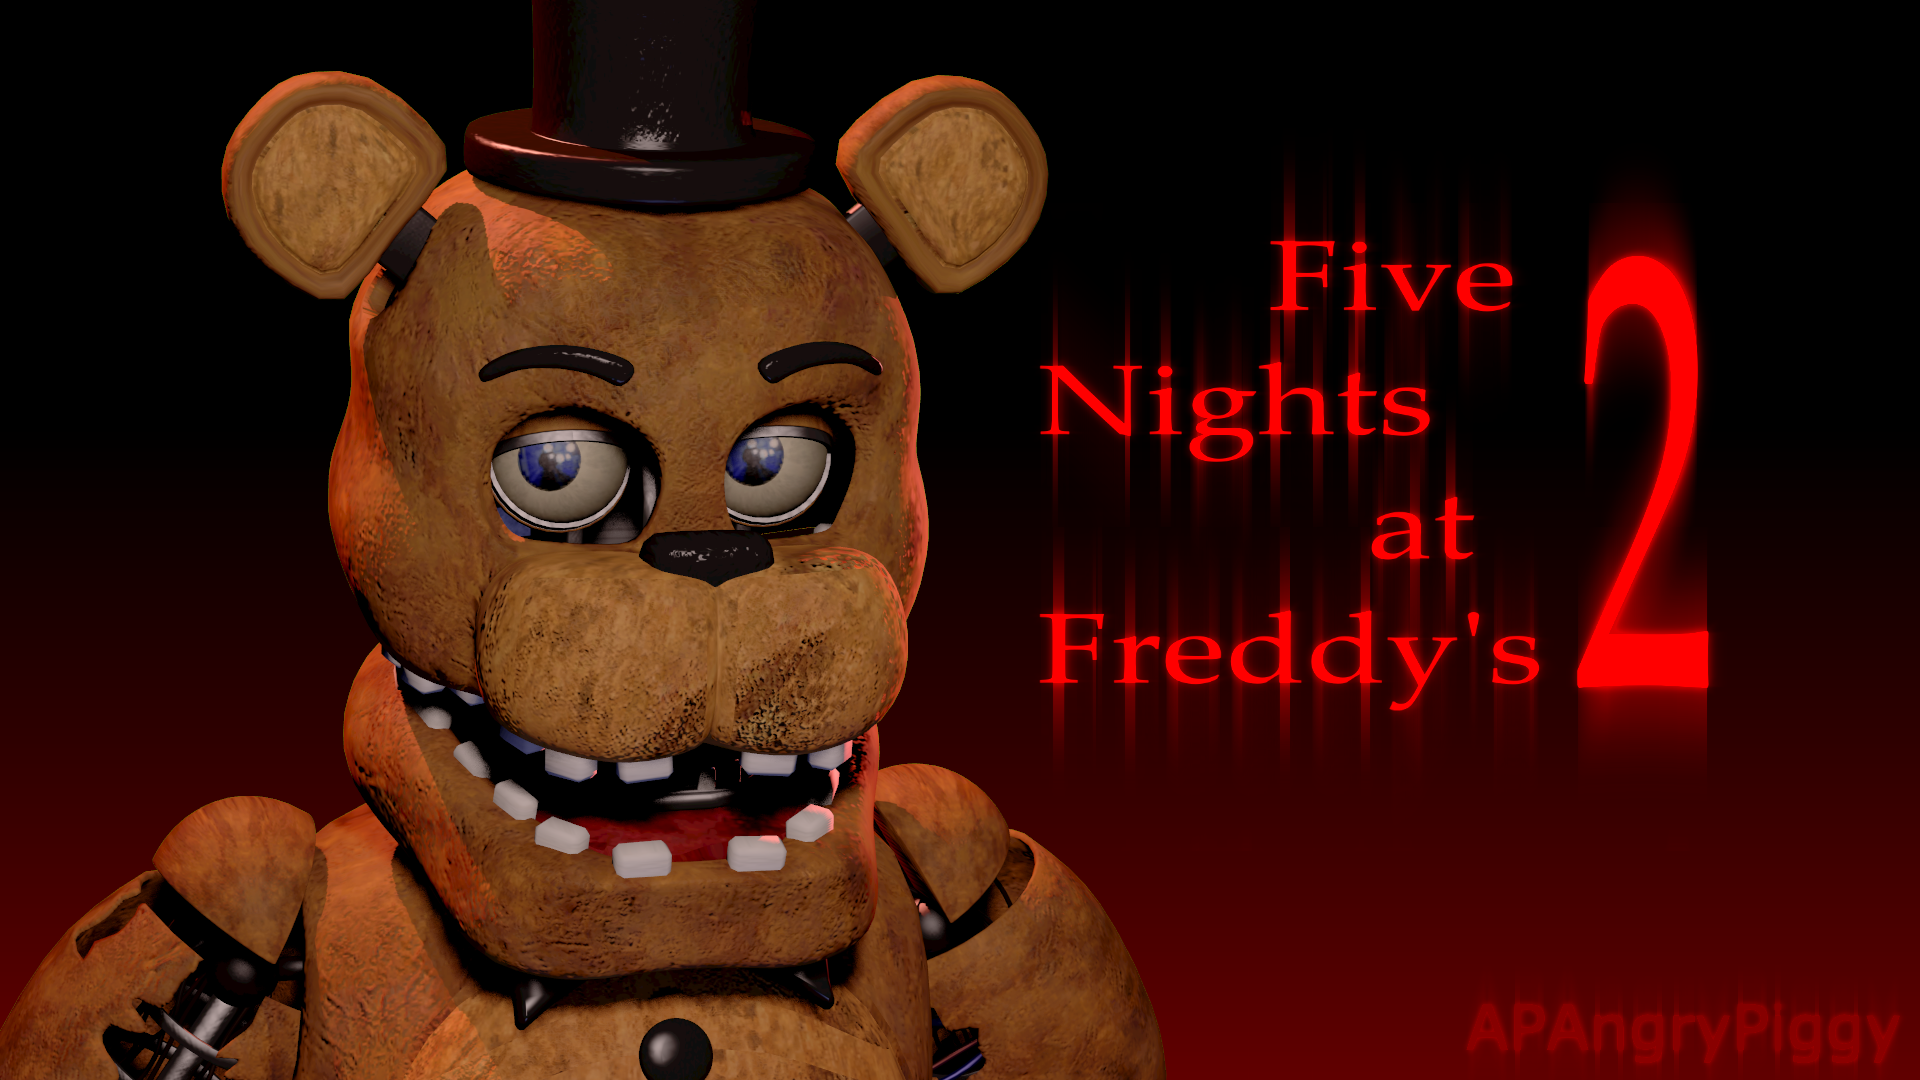 Игру фредди найт. Файв Найтс АТ Фредди. Фредди 5 ночей с Фредди 2. Фредди ФНАФ 1 И 2. Five Nights at Freddy' s 1 Фредди.